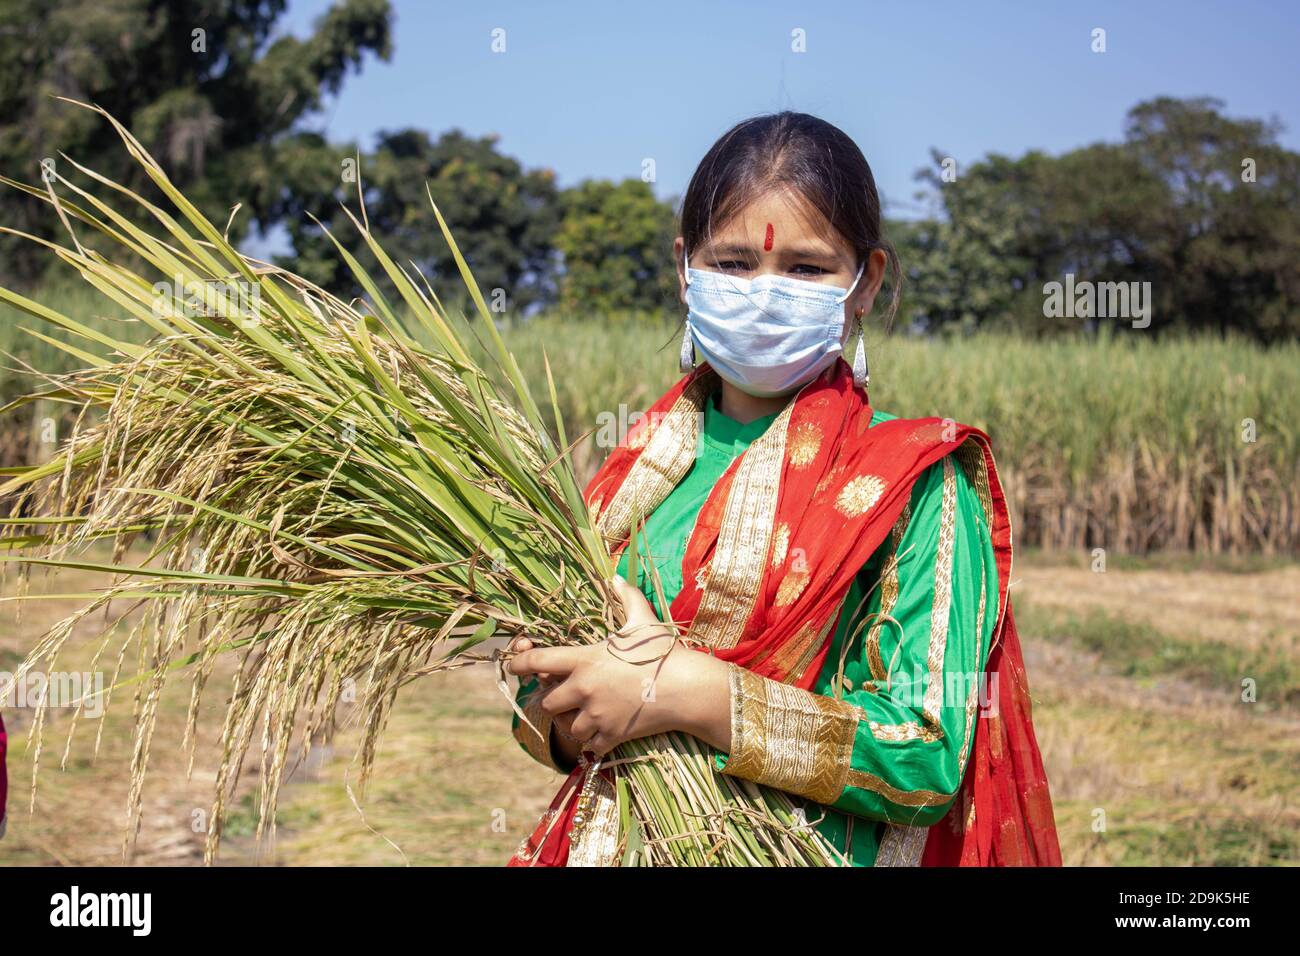 Ragazza indiana che tiene in mano il risone pandemico Corona. L'India è uno dei maggiori produttori di riso al mondo. Foto di alta qualità Foto Stock